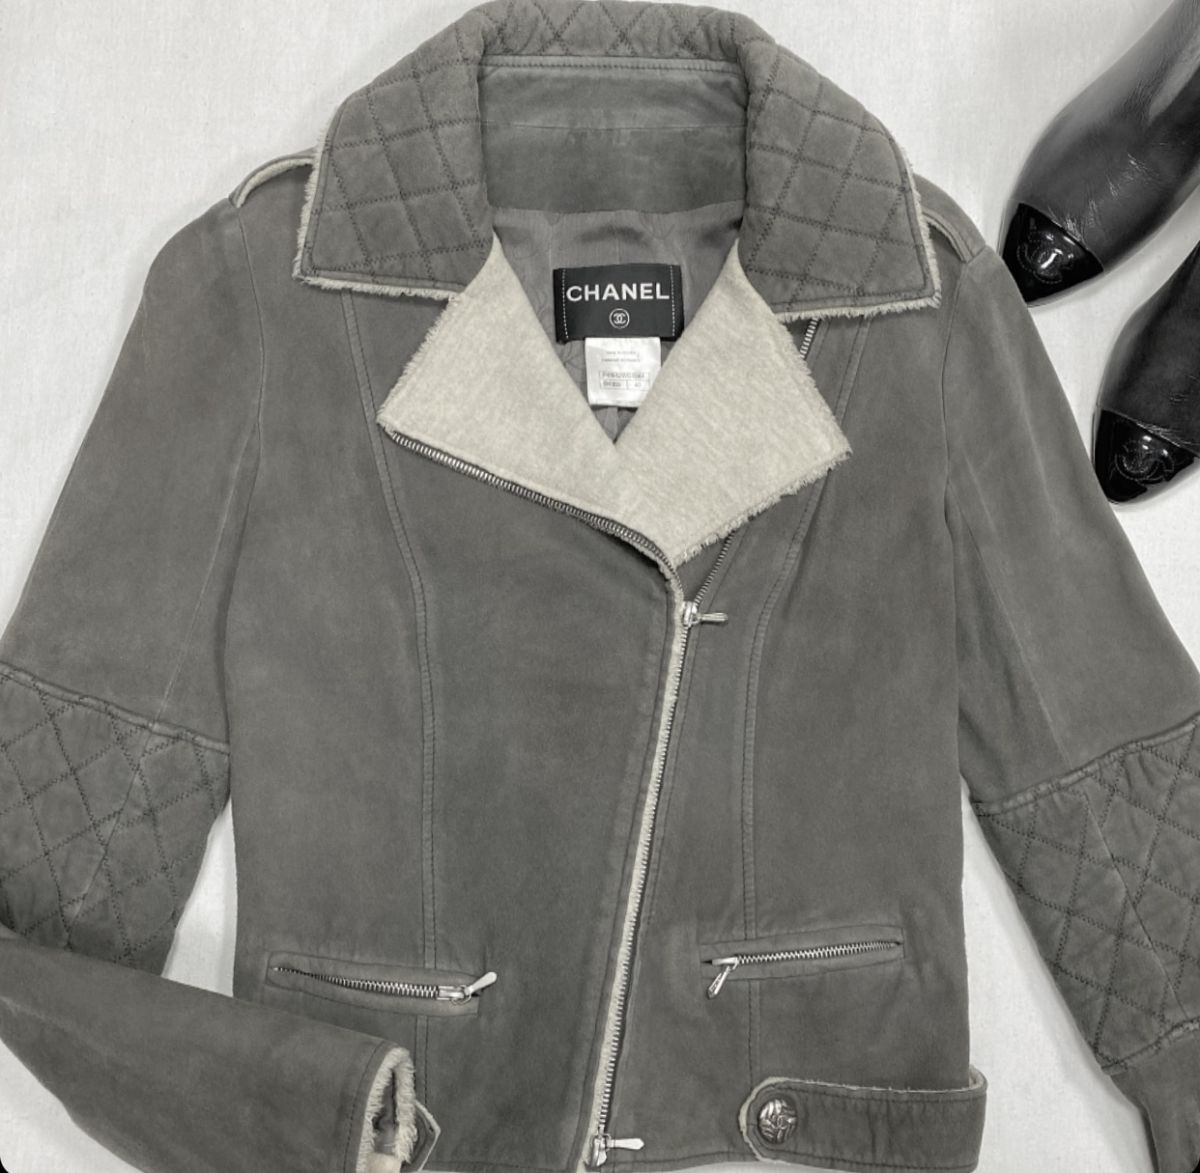 Куртка Chanel размер 40 цена 46 155 руб 